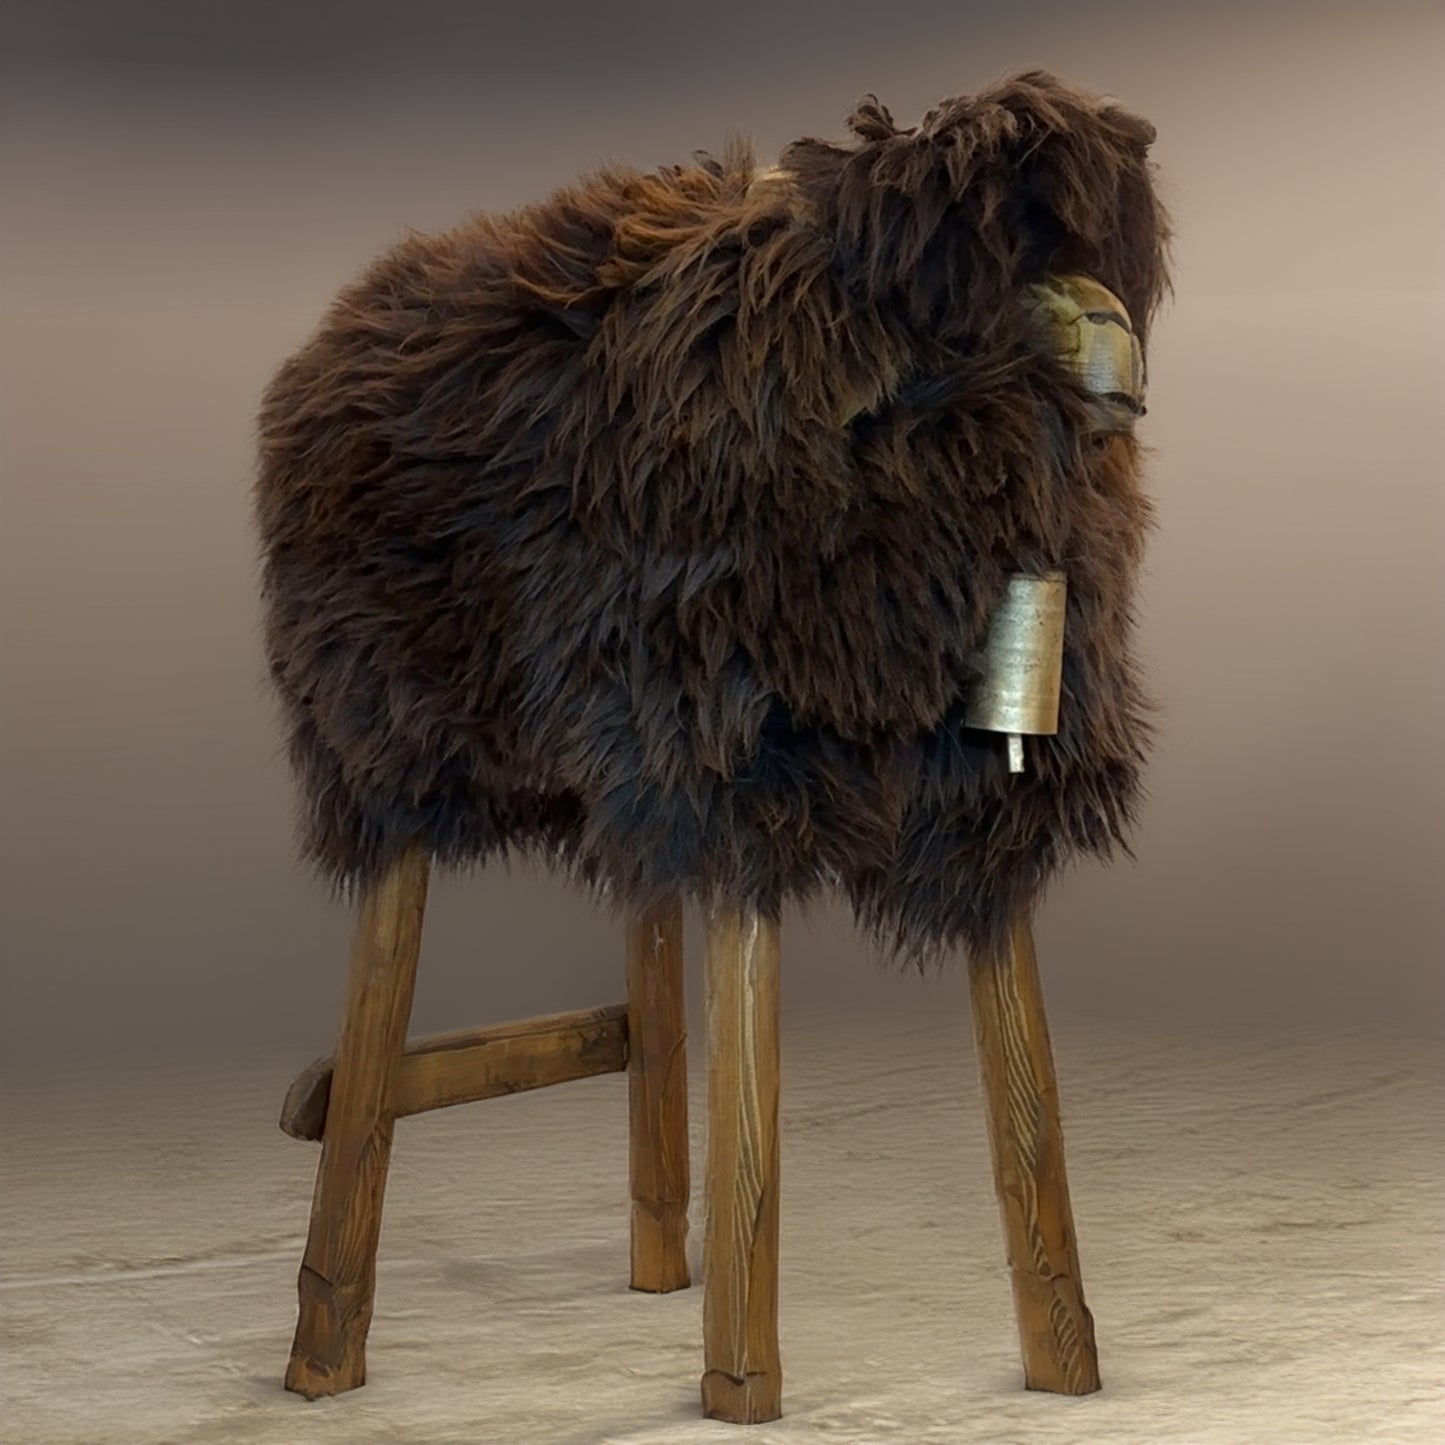 مقعد مرتفع ➳ بيرتا الفتاة البرية ➳ دب بني مصمم على شكل خروف على شكل حيوان